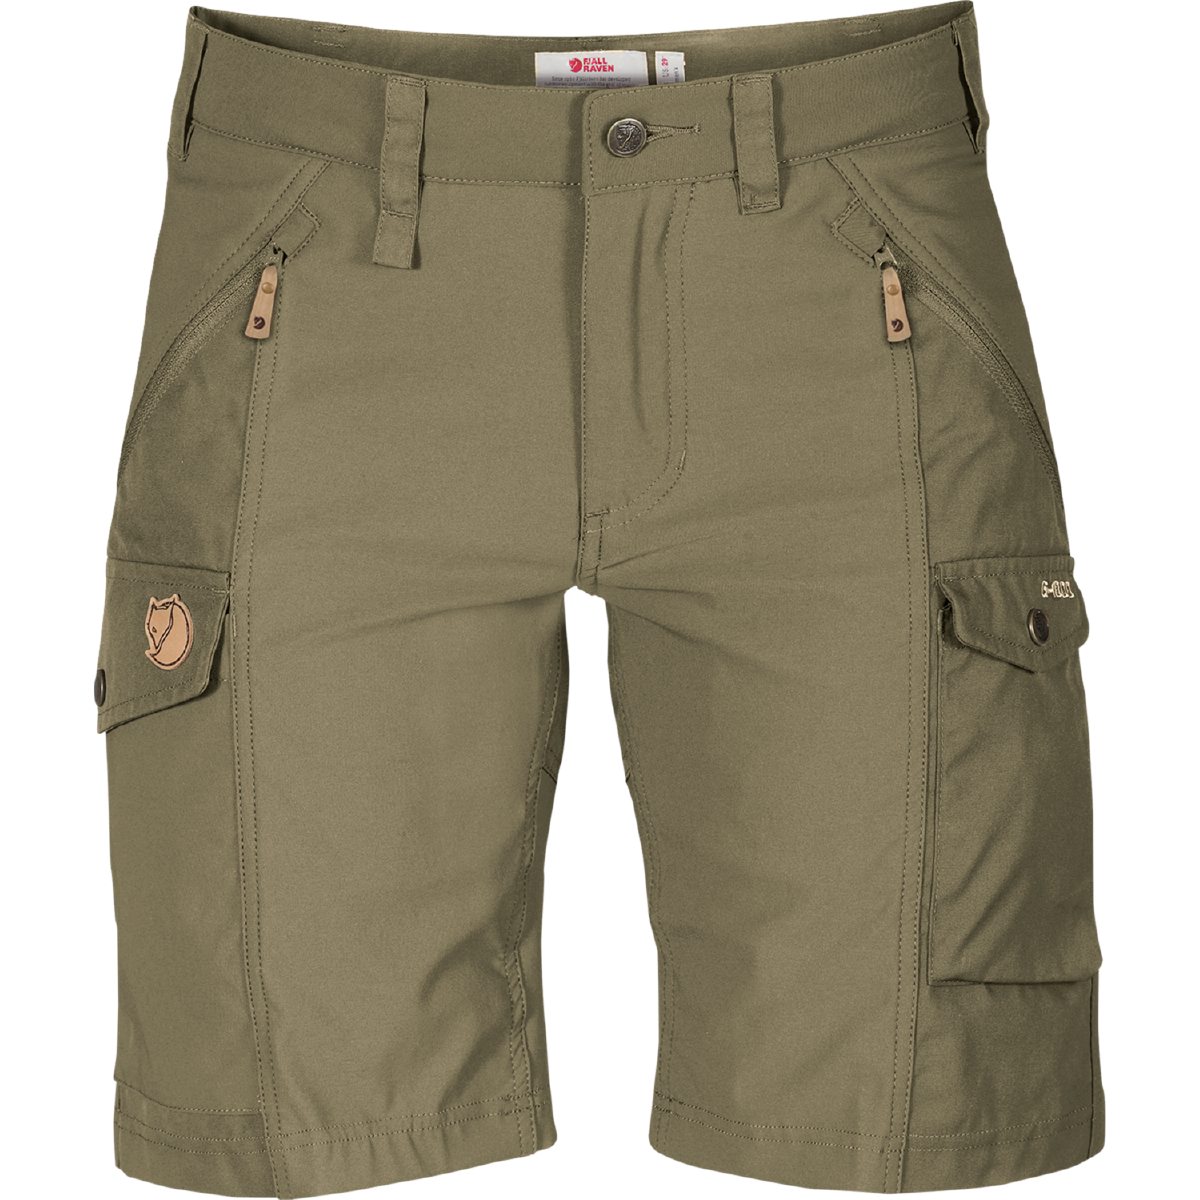 Fjäll Räven Outdoor-Shorts Shorts Nikka Curved Hochtechnische Outdoorshorts aus Stretchmaterial mit Verstärkung aus G-1000.